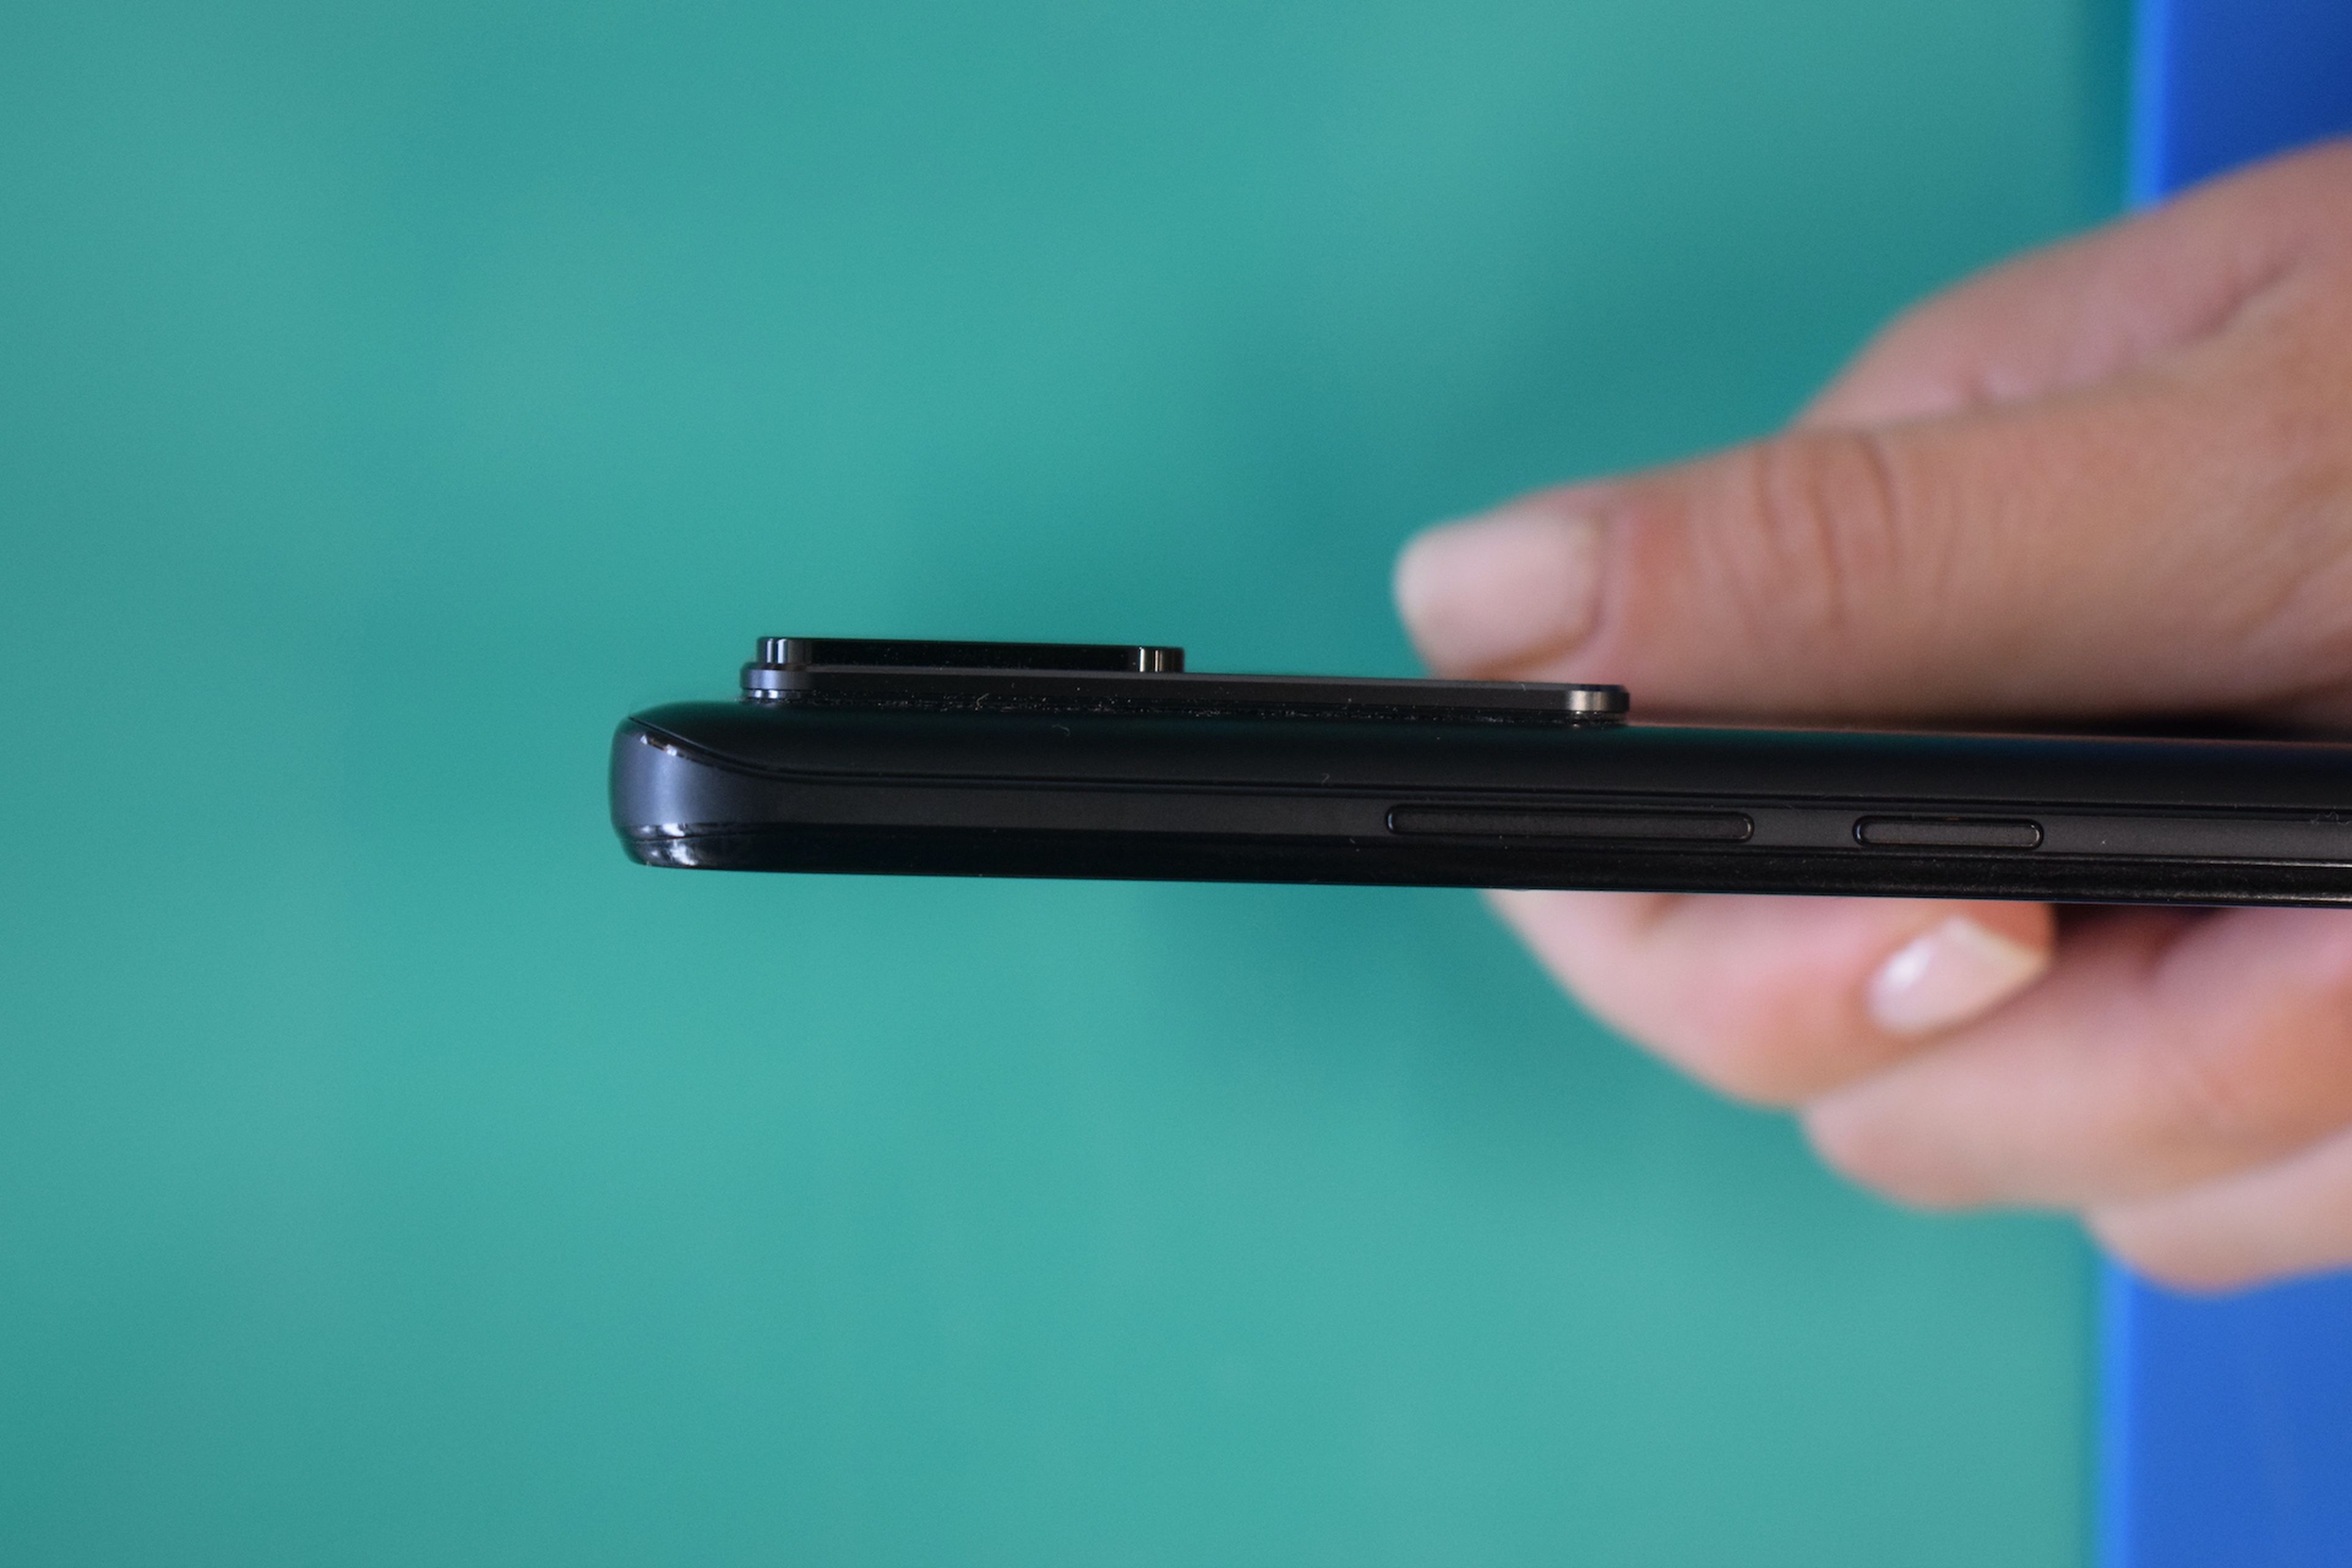 Xiaomi 12T Pro, análisis: potencia, cámara y muchos rivales